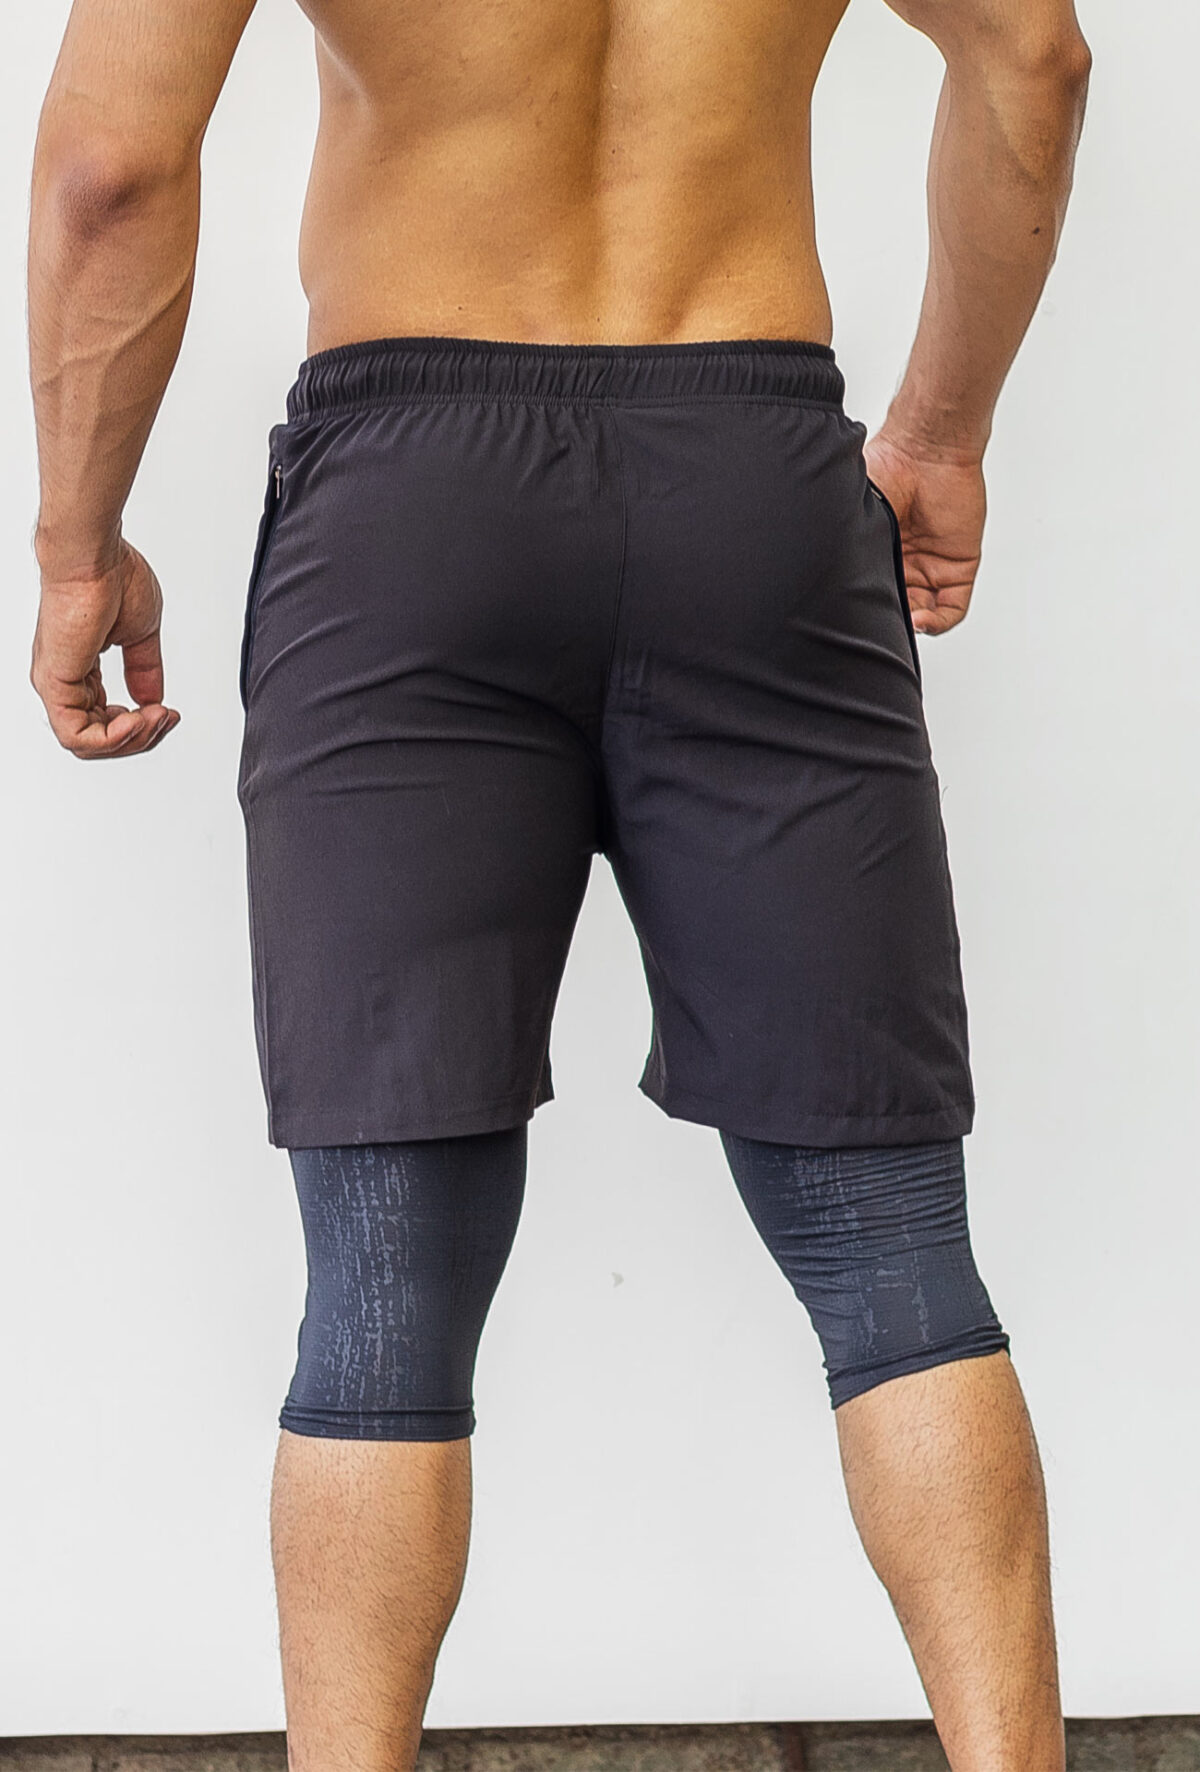 wolfit-shorts-core-black-compression